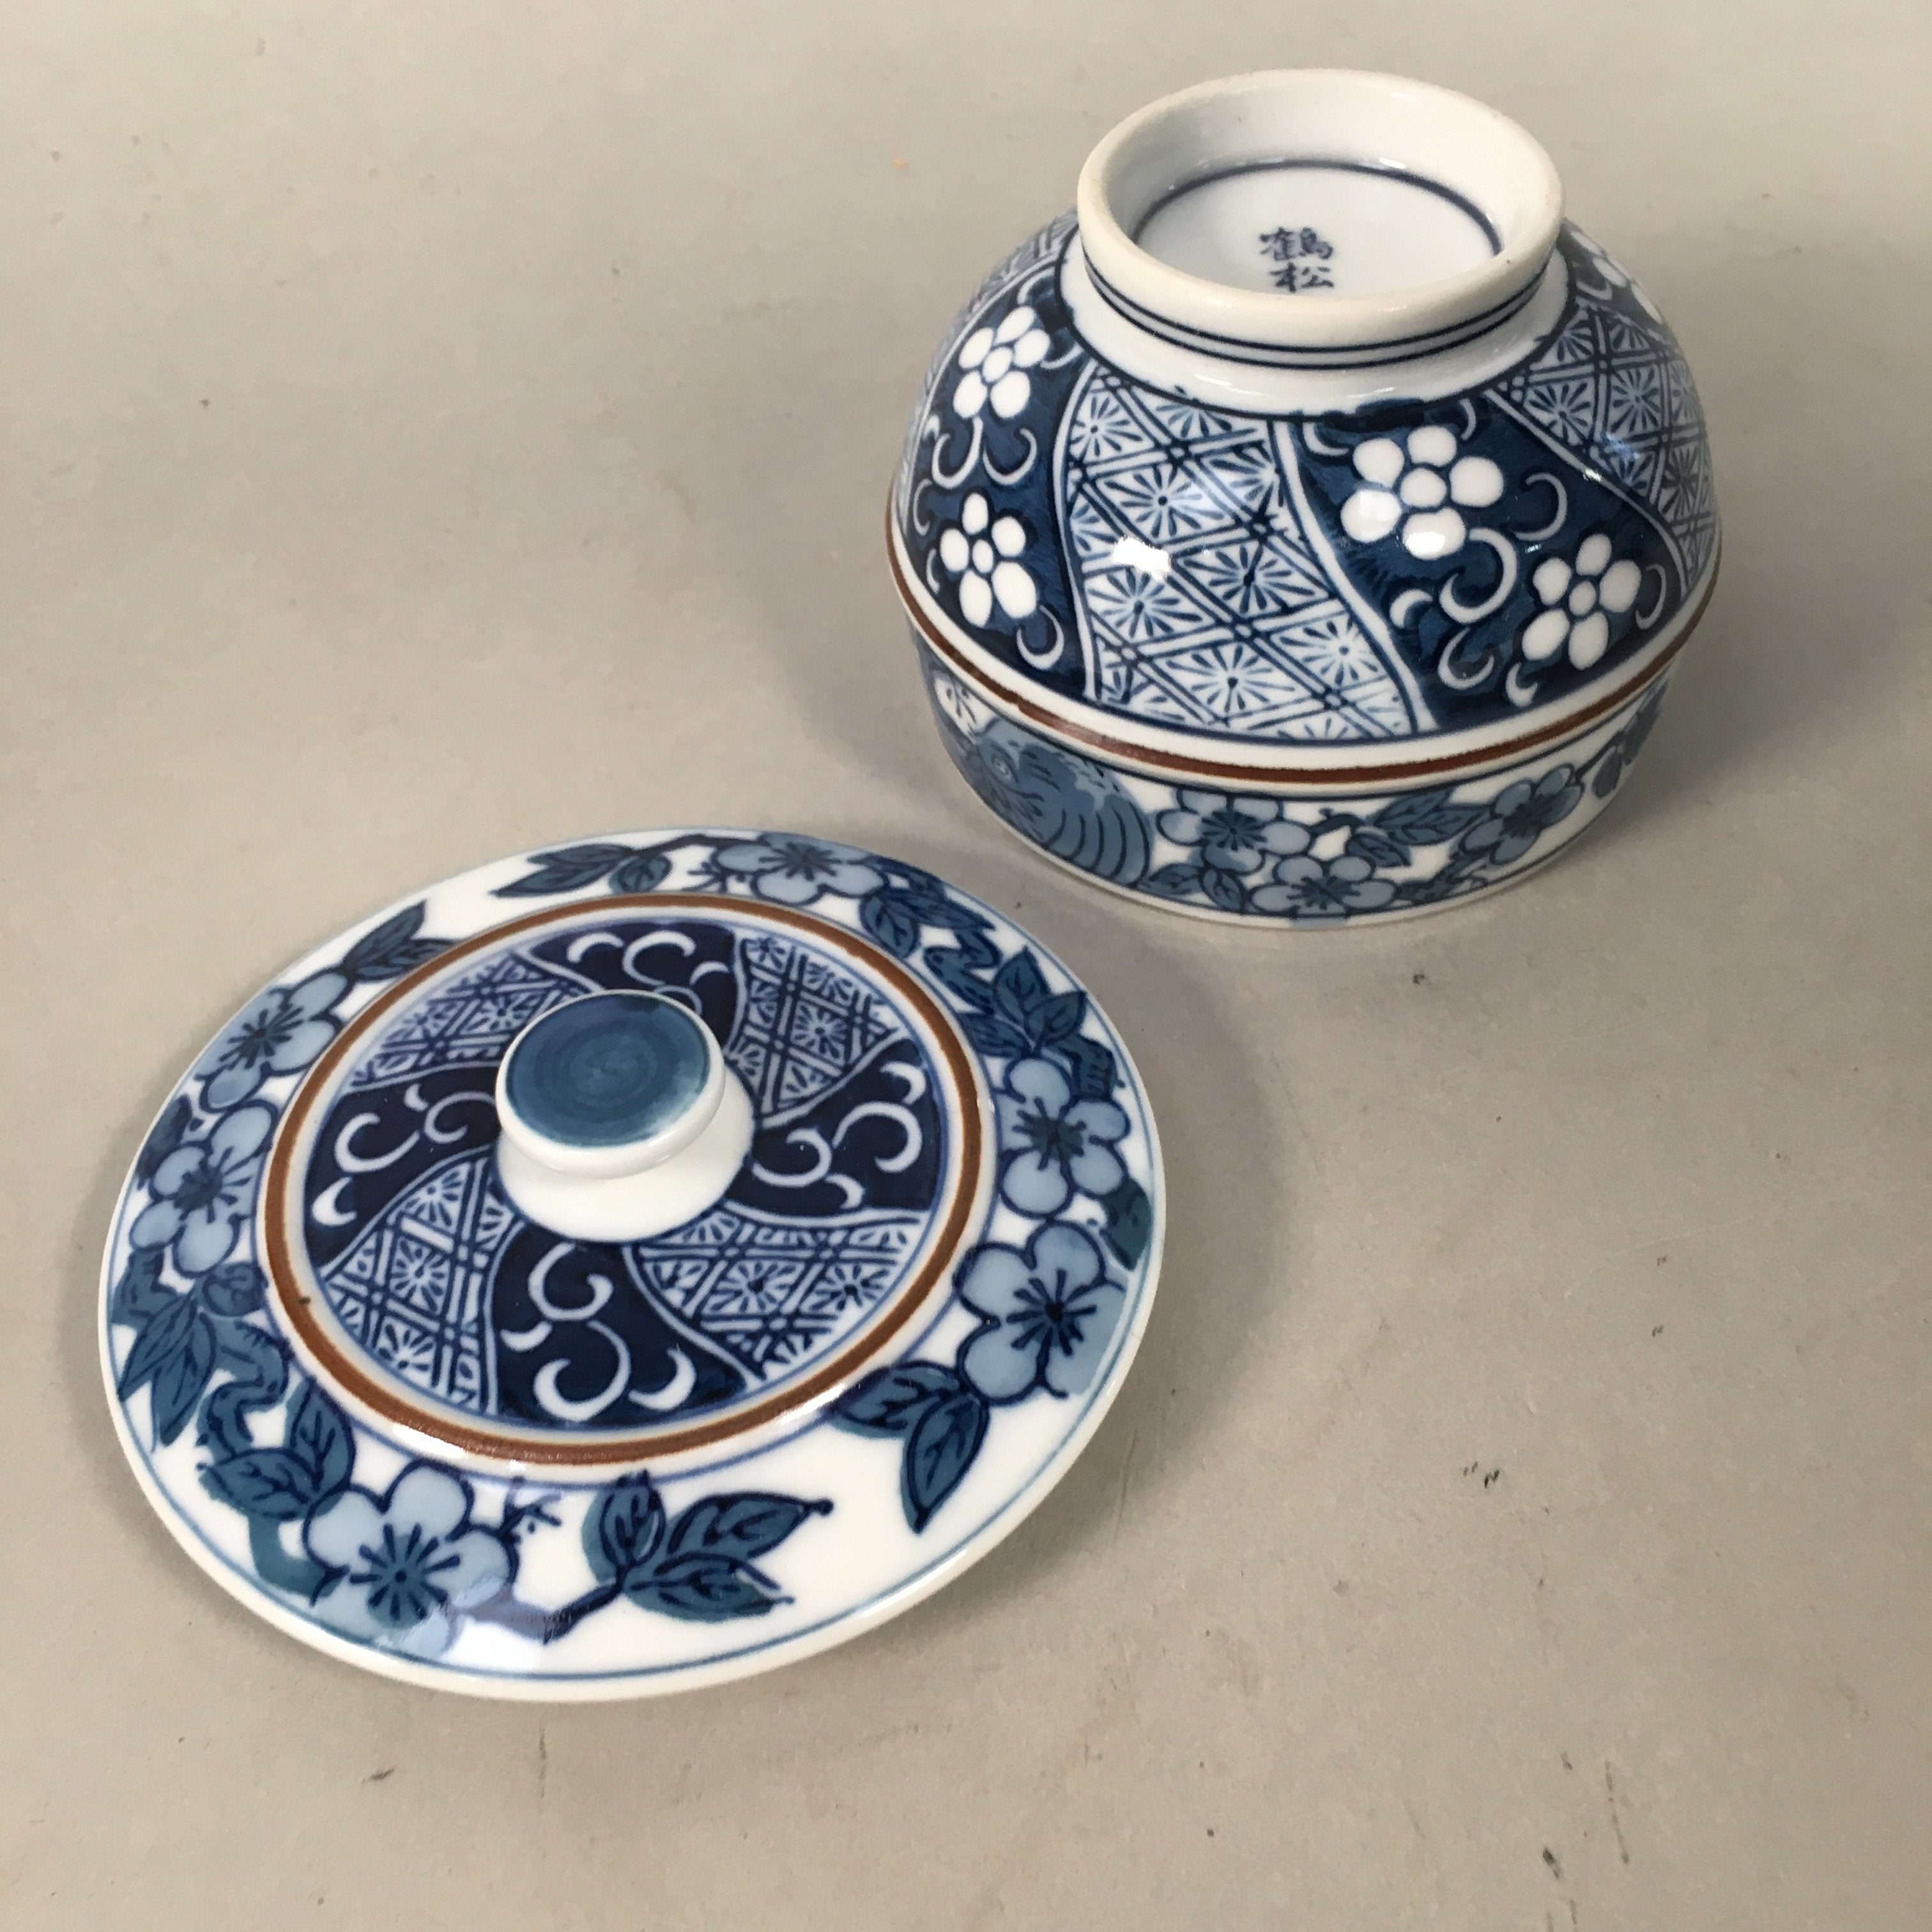 Japanese Porcelain Lidded Teacup Vtg Arita ware Yunomi Blue White Sencha PP414